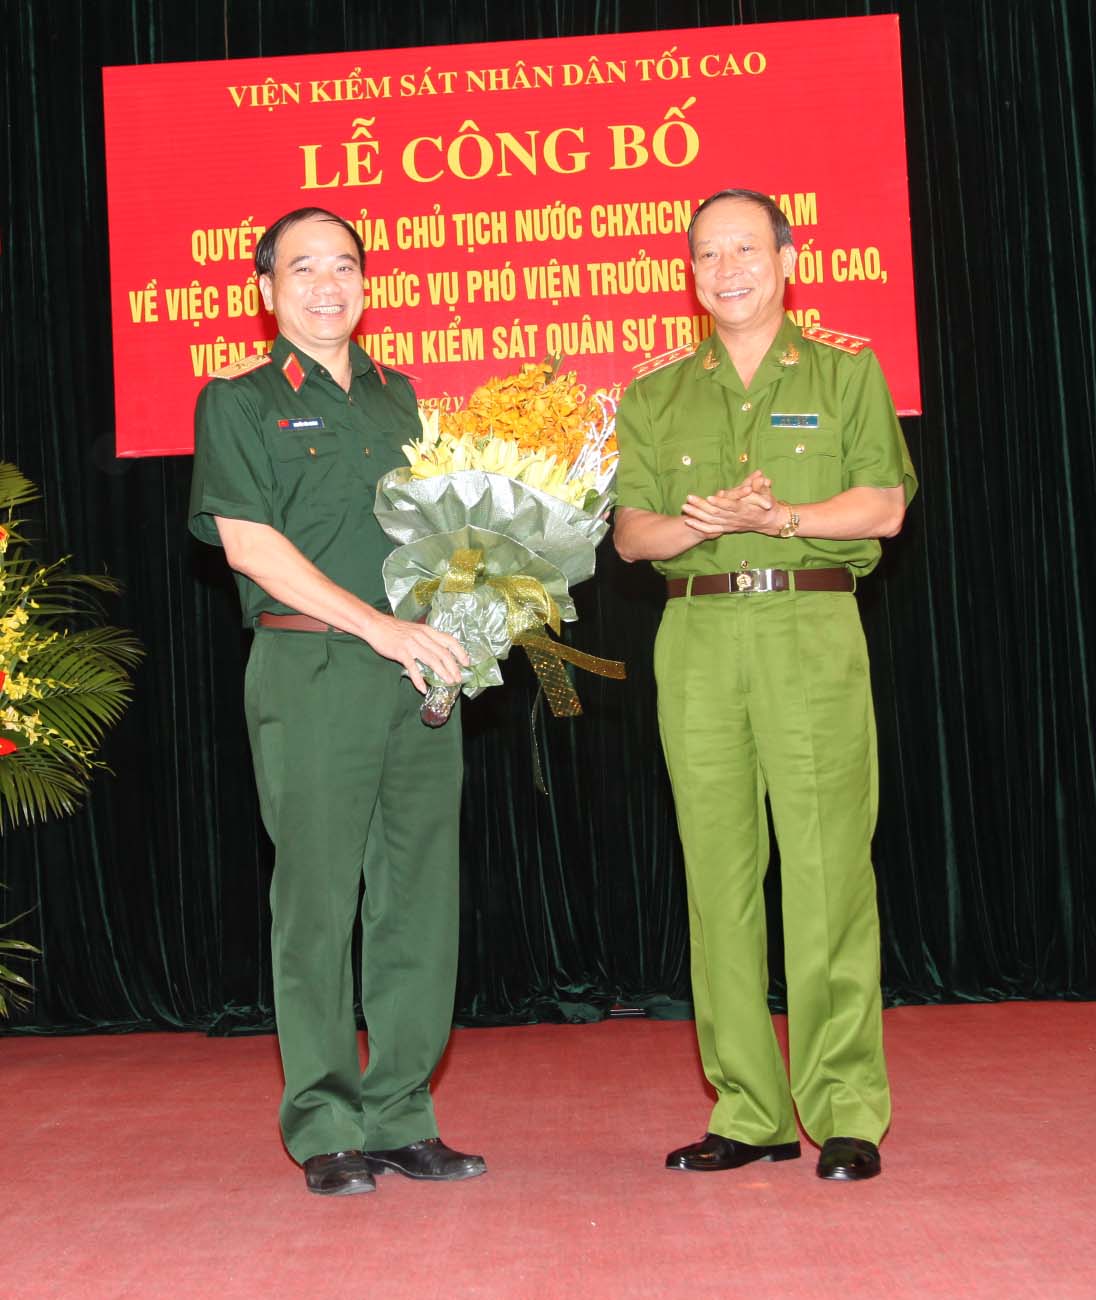 Đồng chí Lê Quý Vương, Ủy viên trung ương đảng, Thứ trưởng Bộ Công an tặng hoa chúc mừng đồng chí Nguyễn Văn Khánh tại buổi Lễ